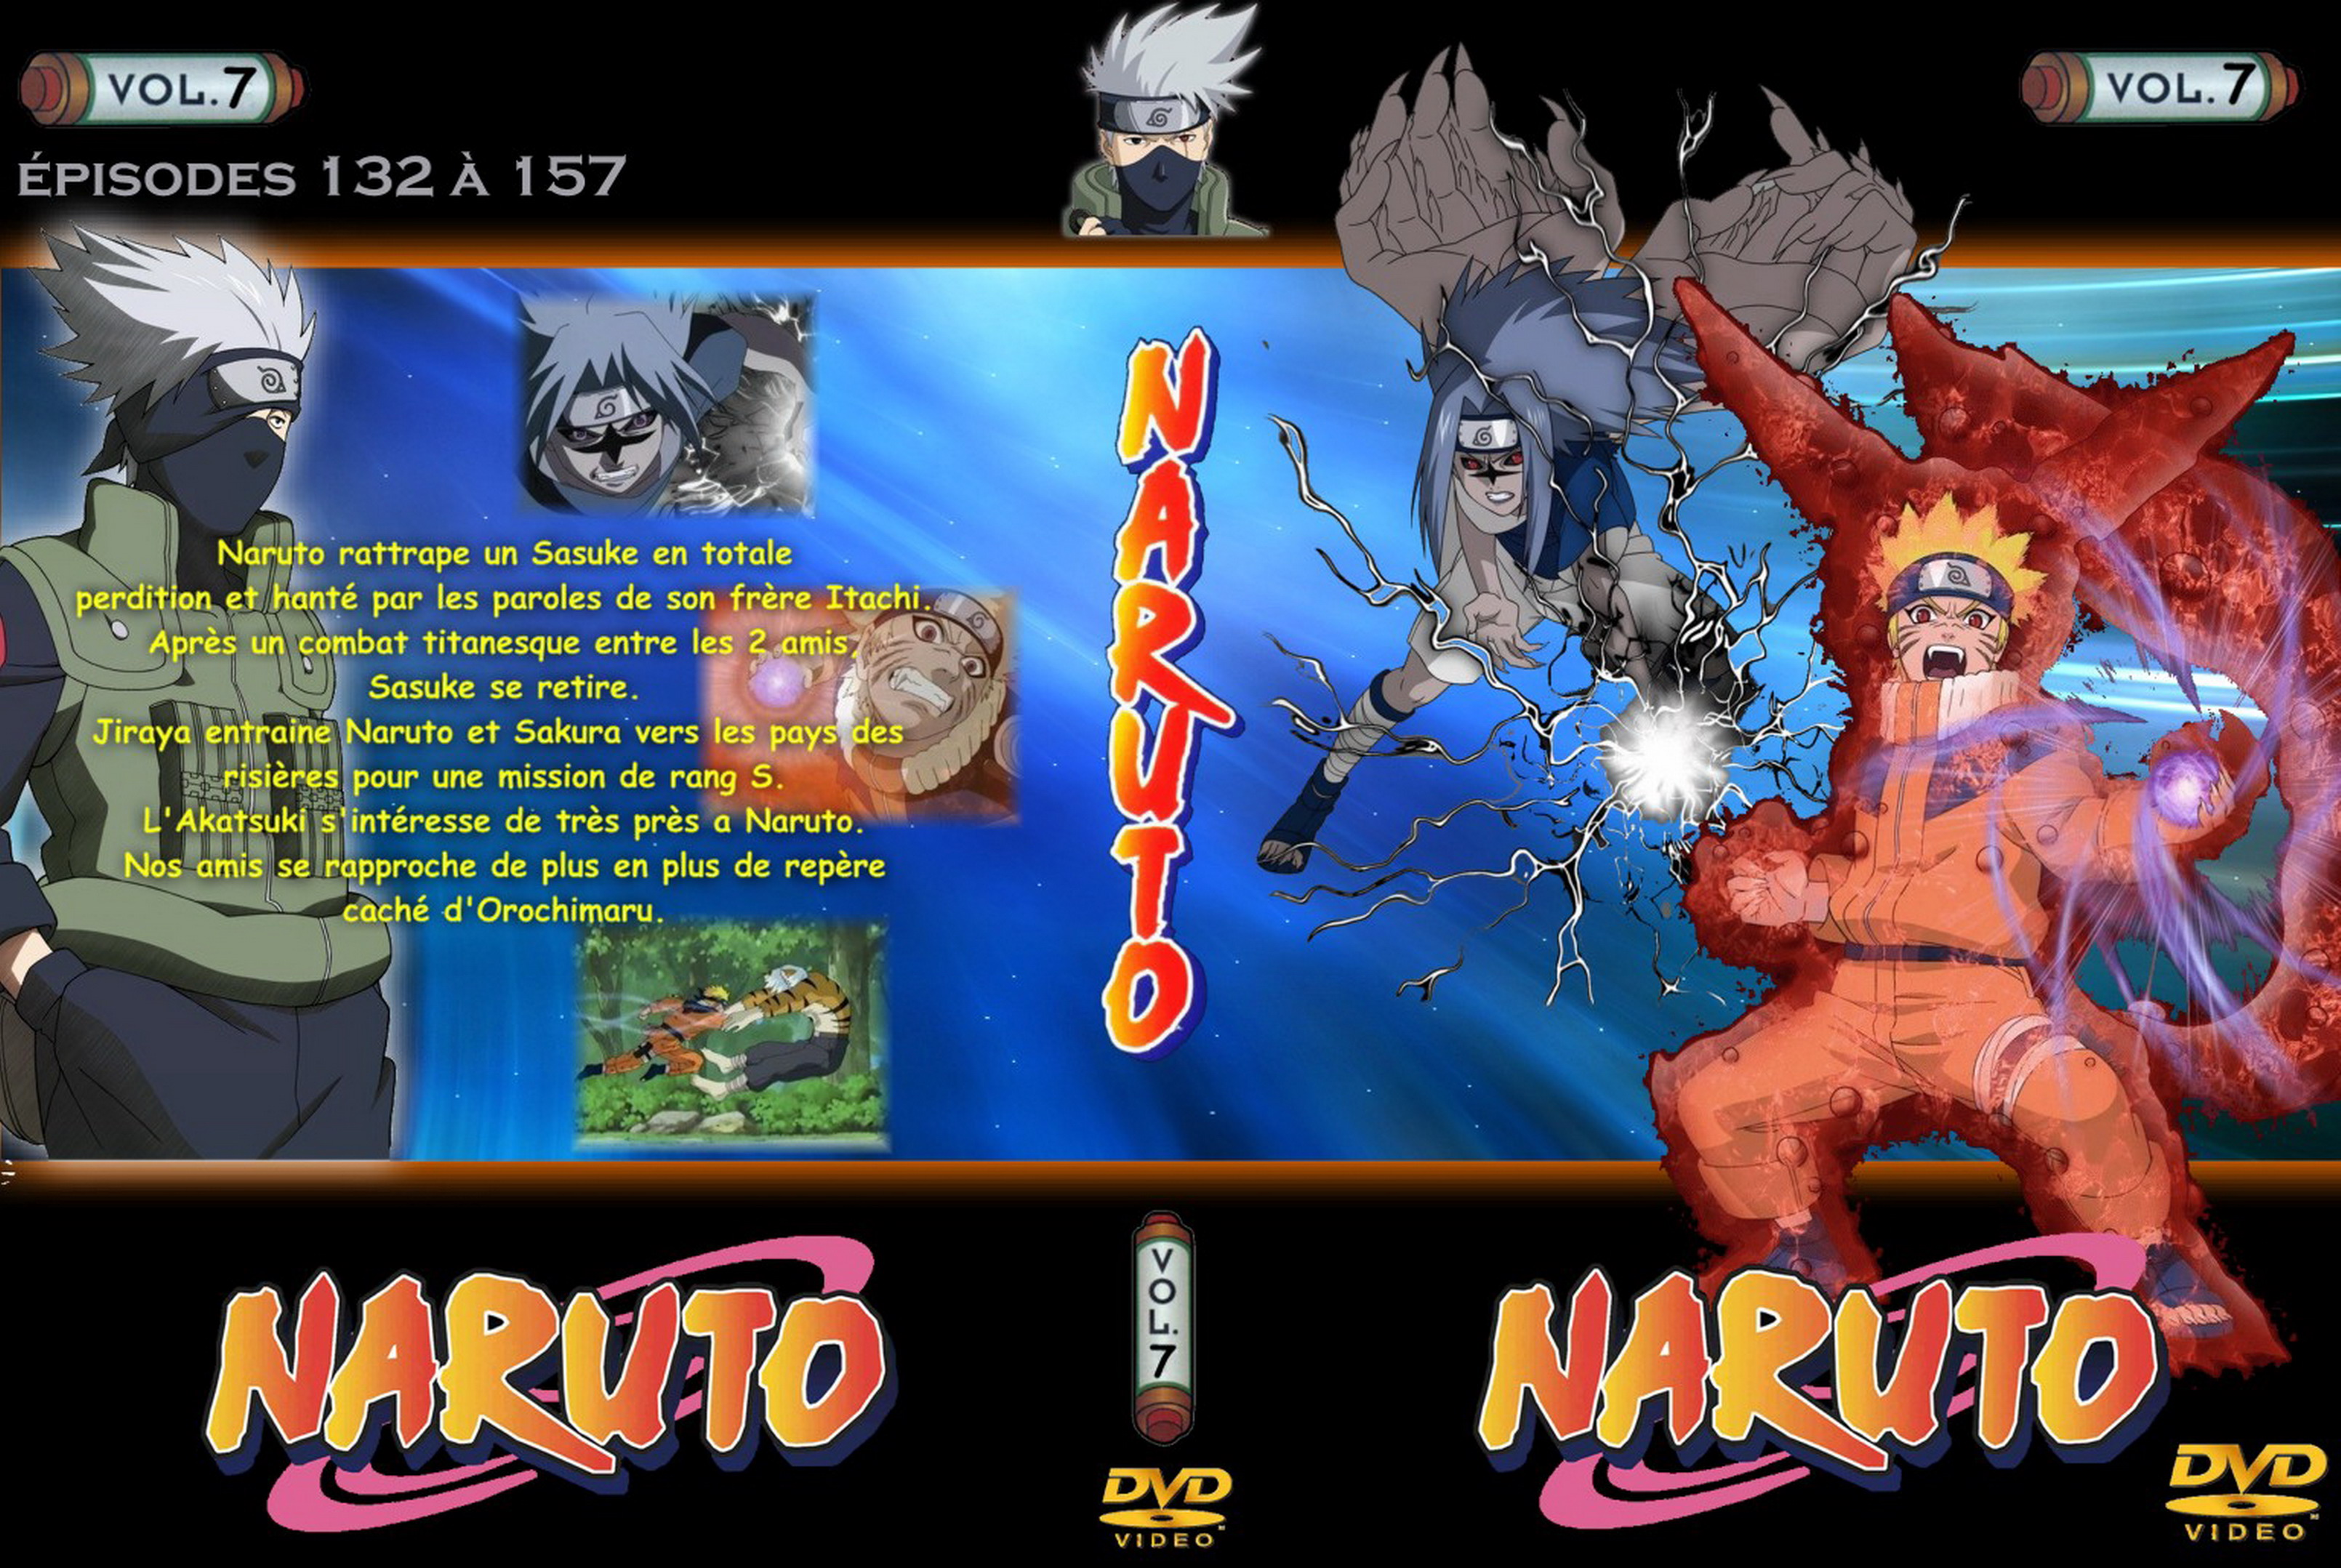 Jaquette DVD Naruto vol 07 v2